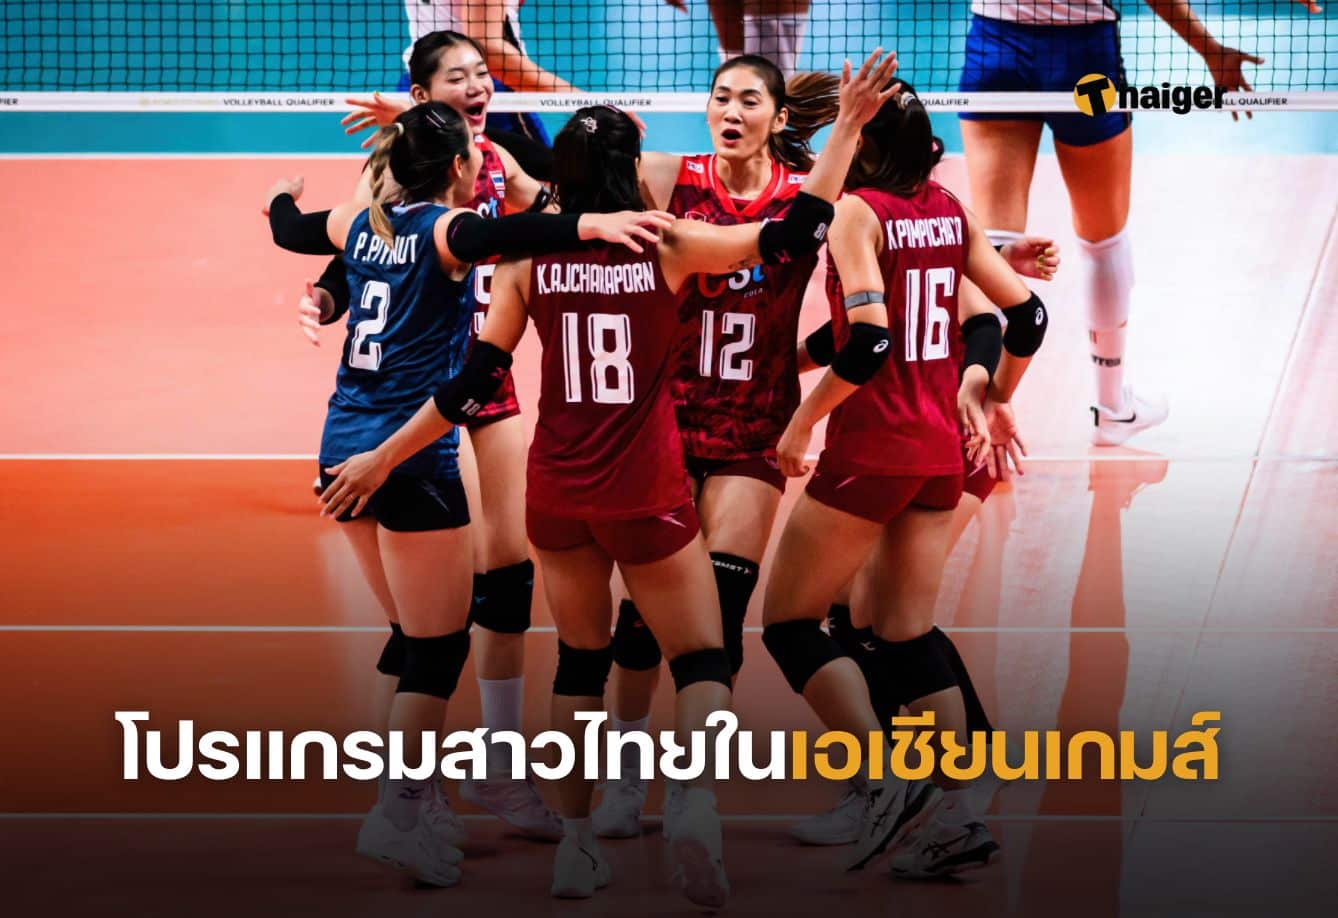 โปรแกรมวอลเลย์บอลสาวไทยในเอเชียนเกมส์